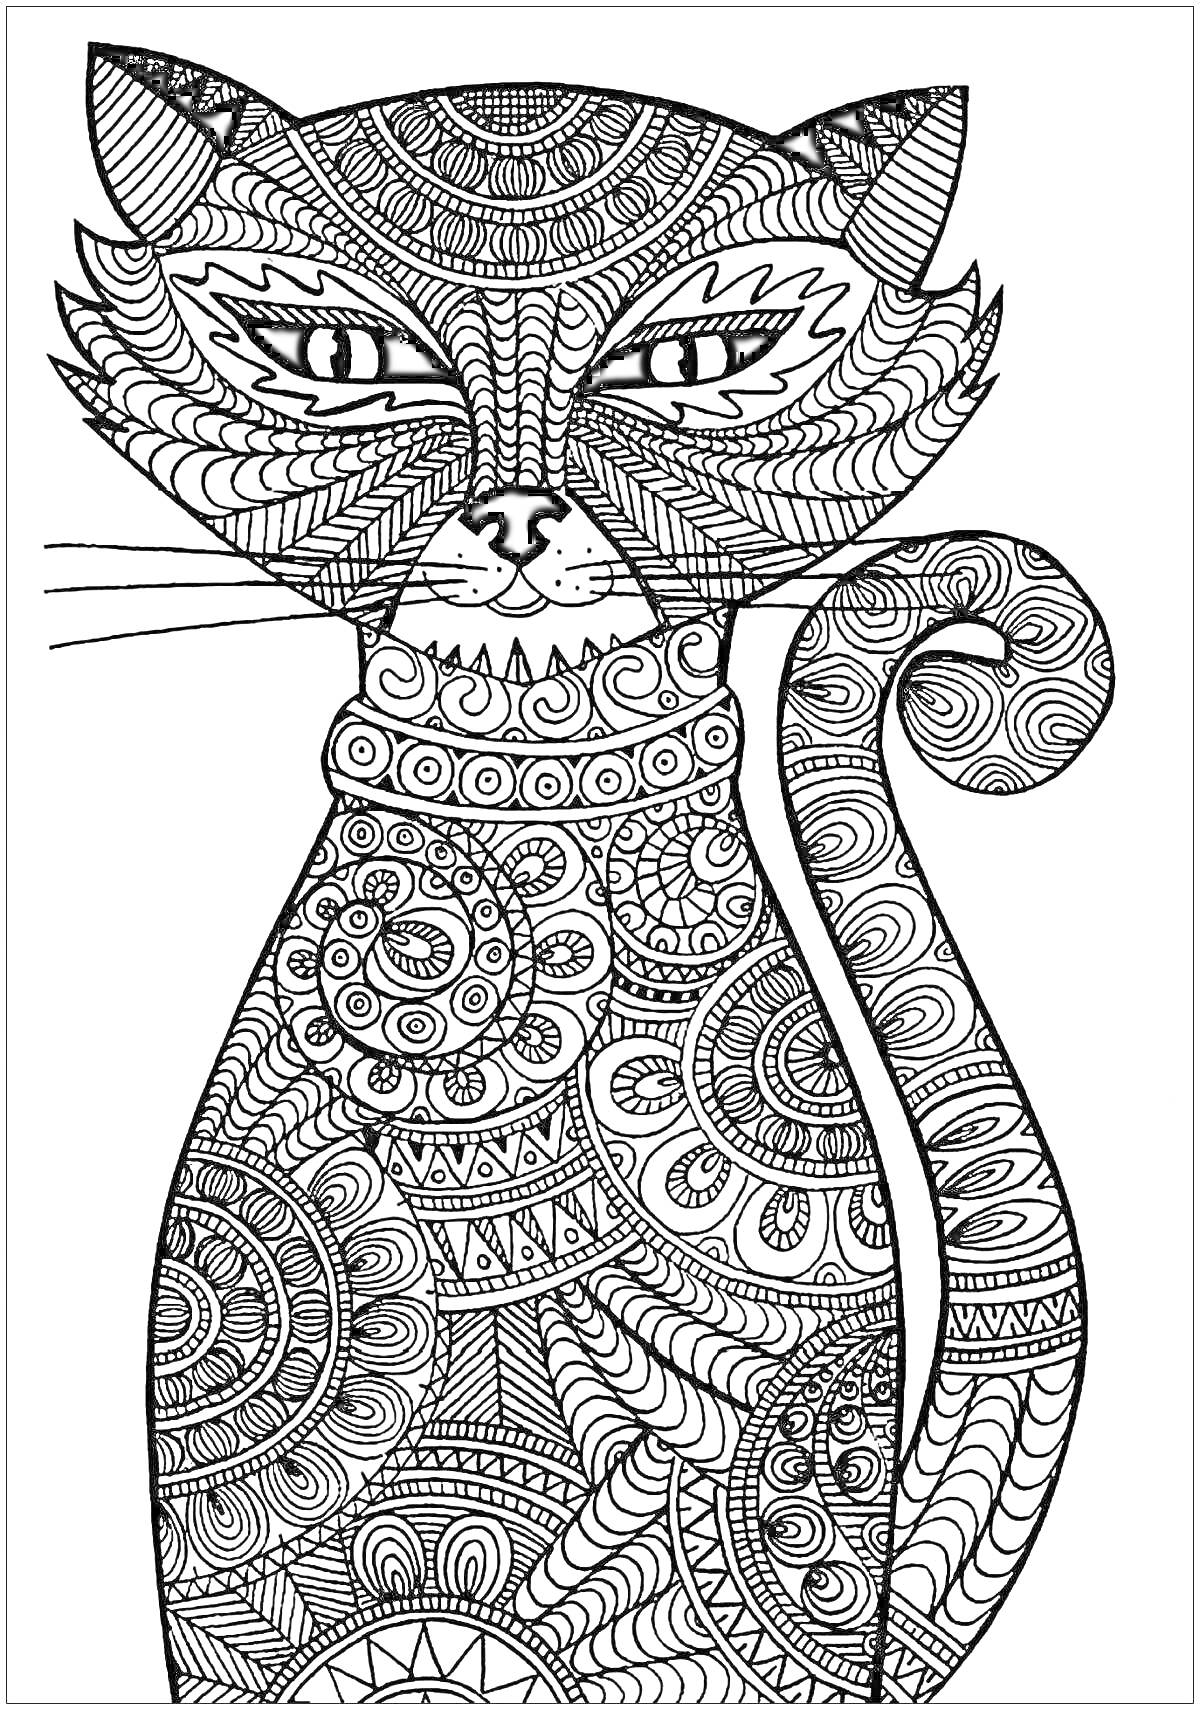 Раскраска Кошка с замысловатым орнаментом, включающим геометрические узоры и закрученные линии